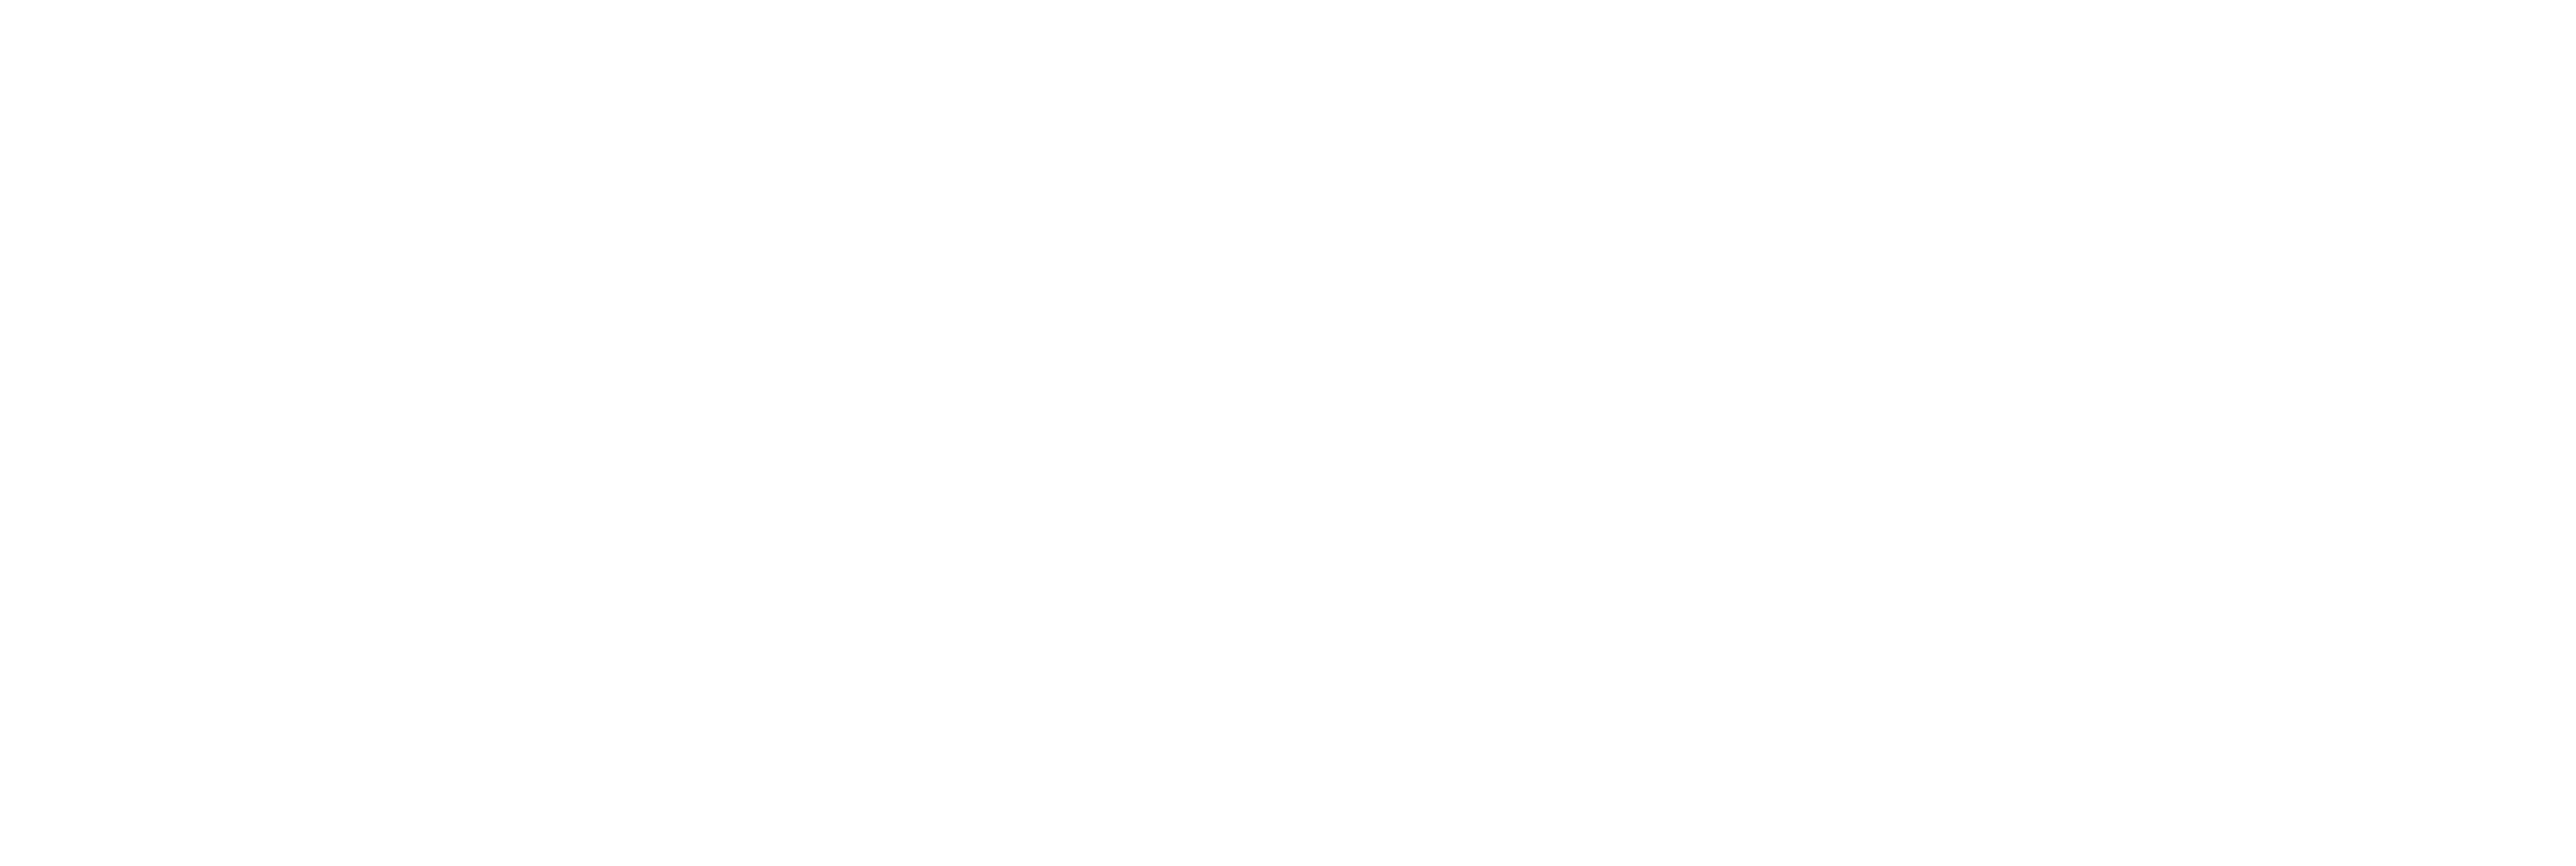 Astra digital logo